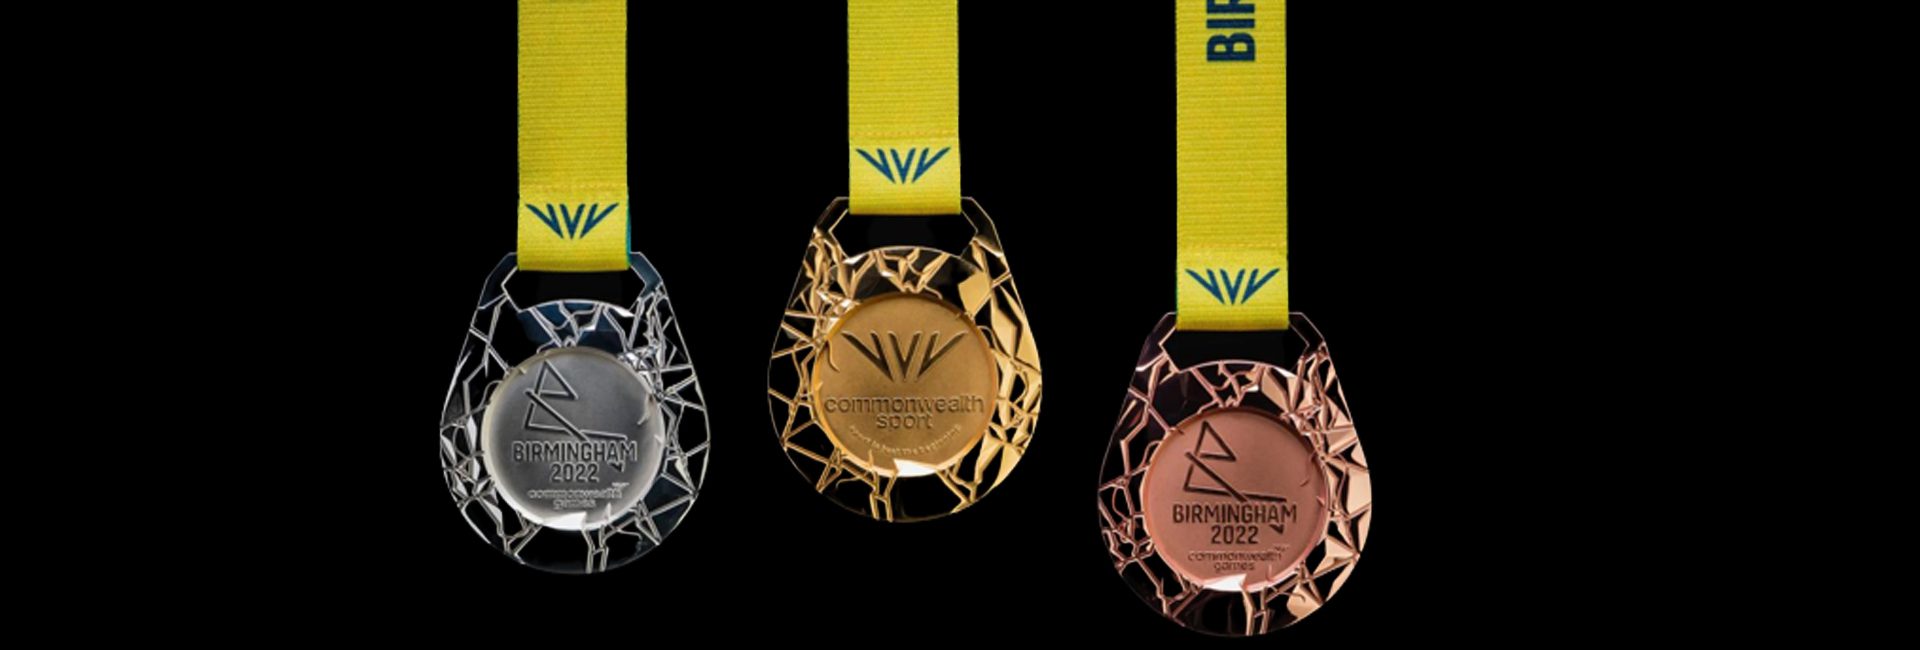 التحليق بأعلى ثلاثي الألوان: يعود نجوم الرياضة الهنود إلى الوطن بـ 61 ميدالية من CWG 2022